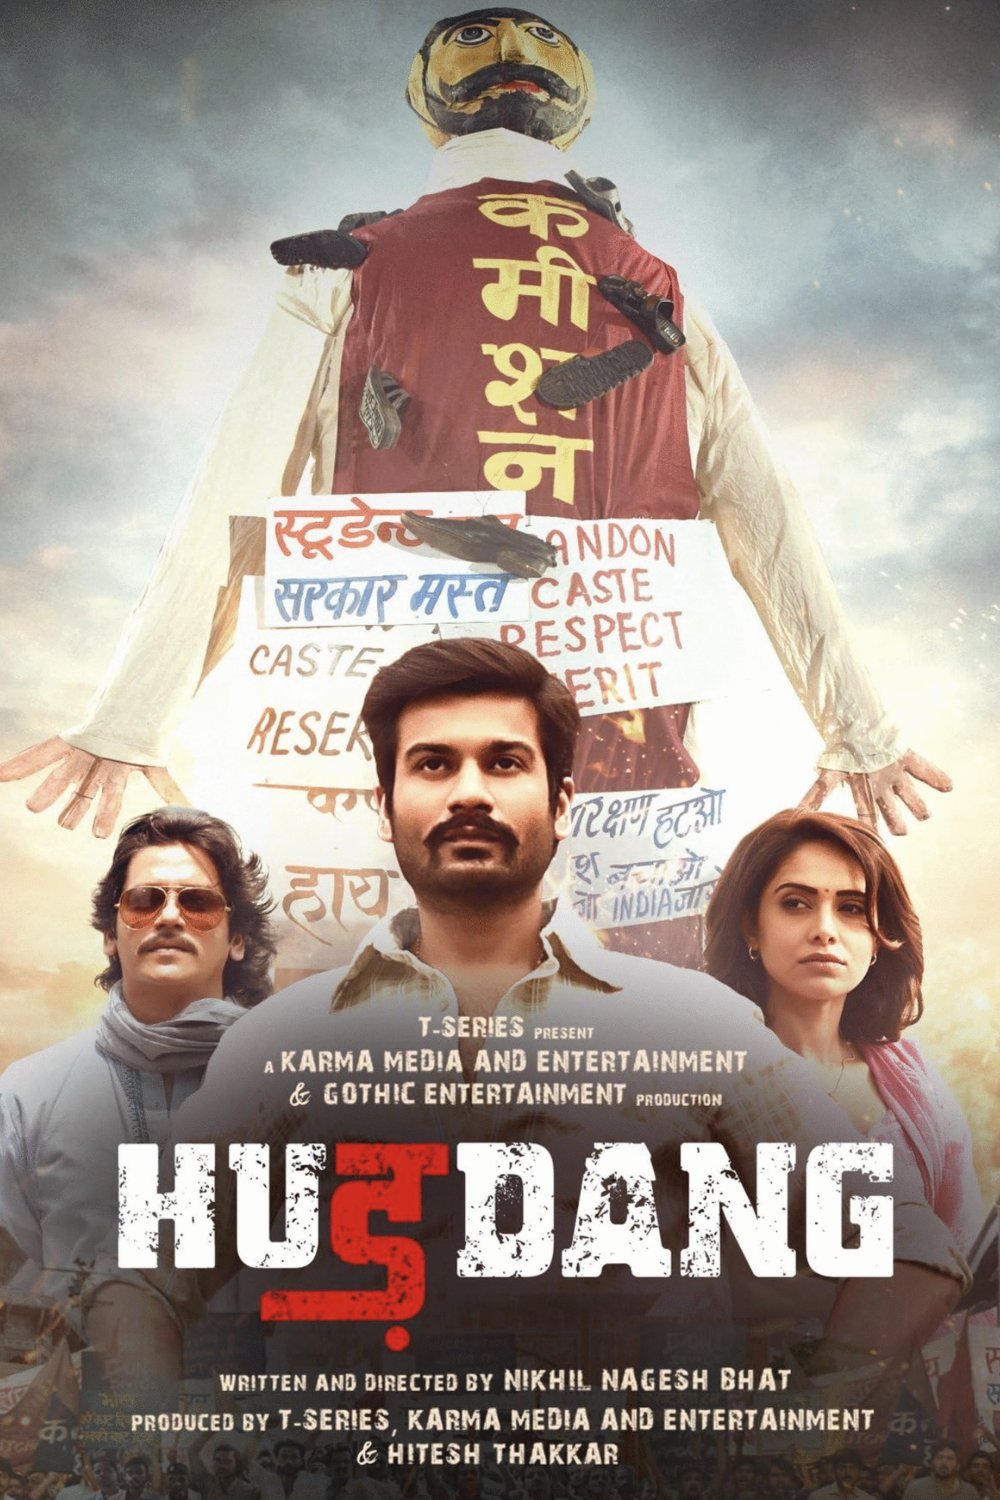 Hindi poster of the movie Hurdang